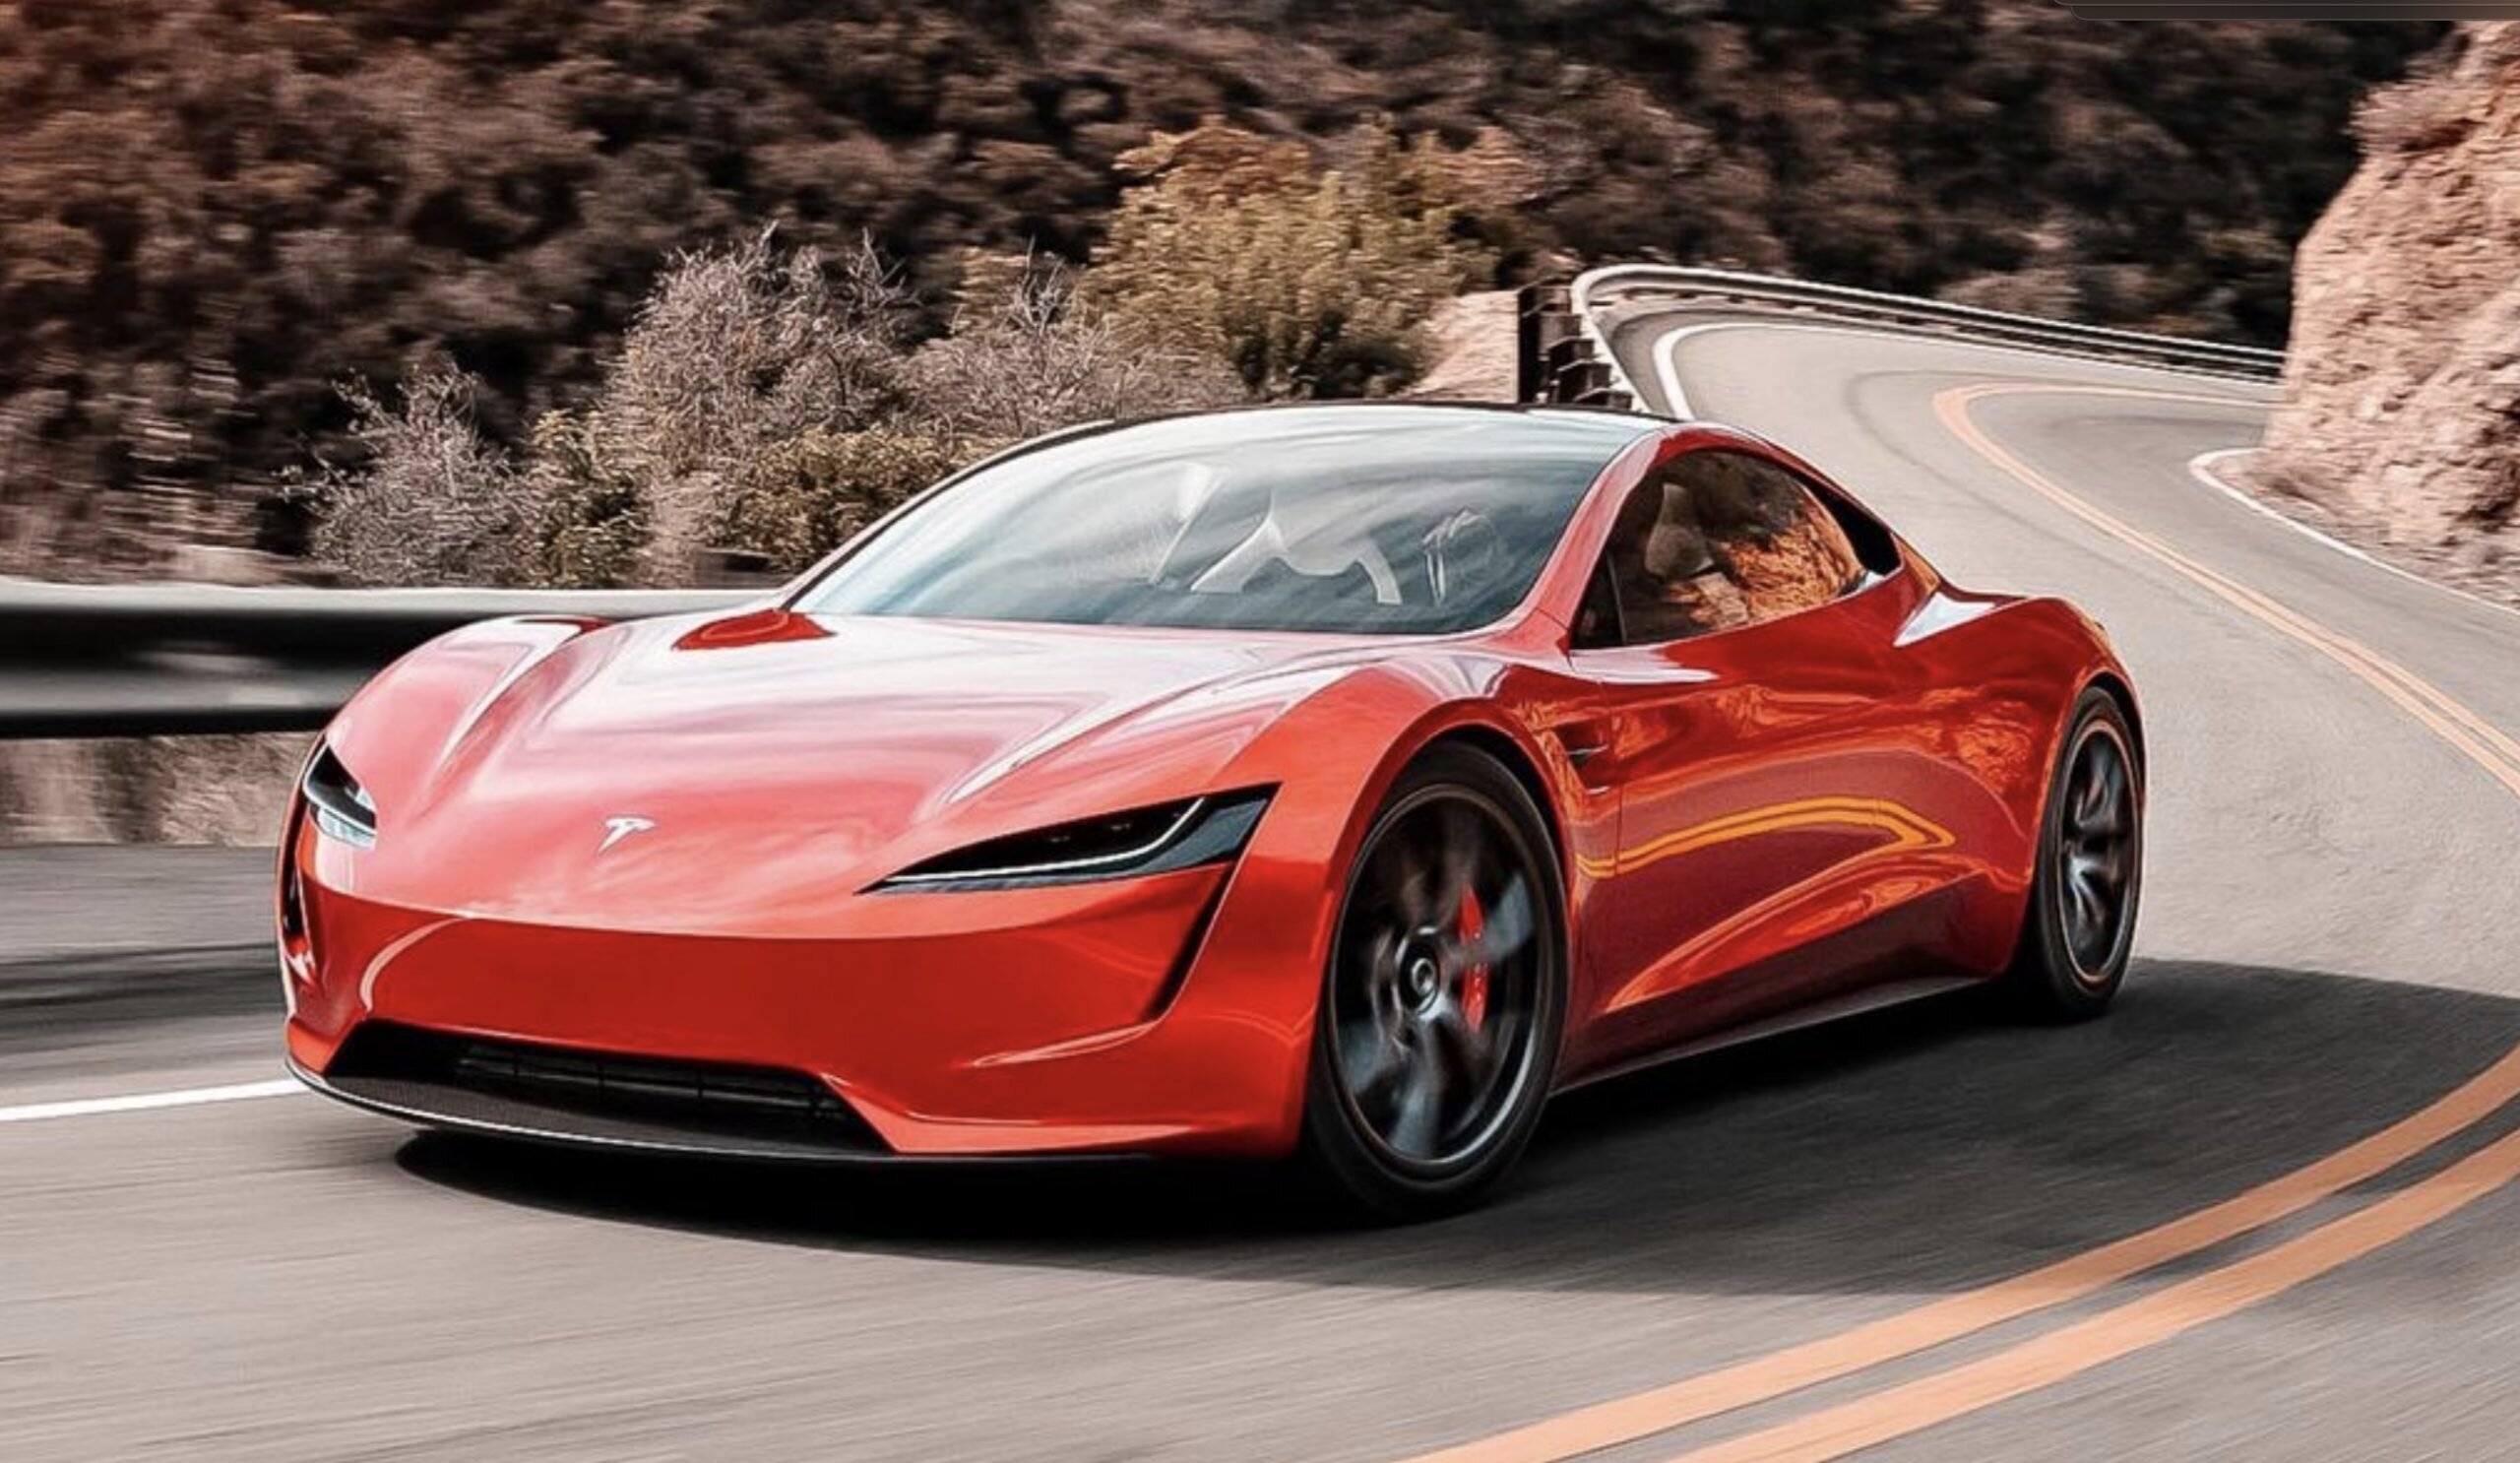 Μέσα στο 2025 θα κυκλοφορήσει το Tesla Roadster, υποστηρίζει ο Ίλον Μασκ